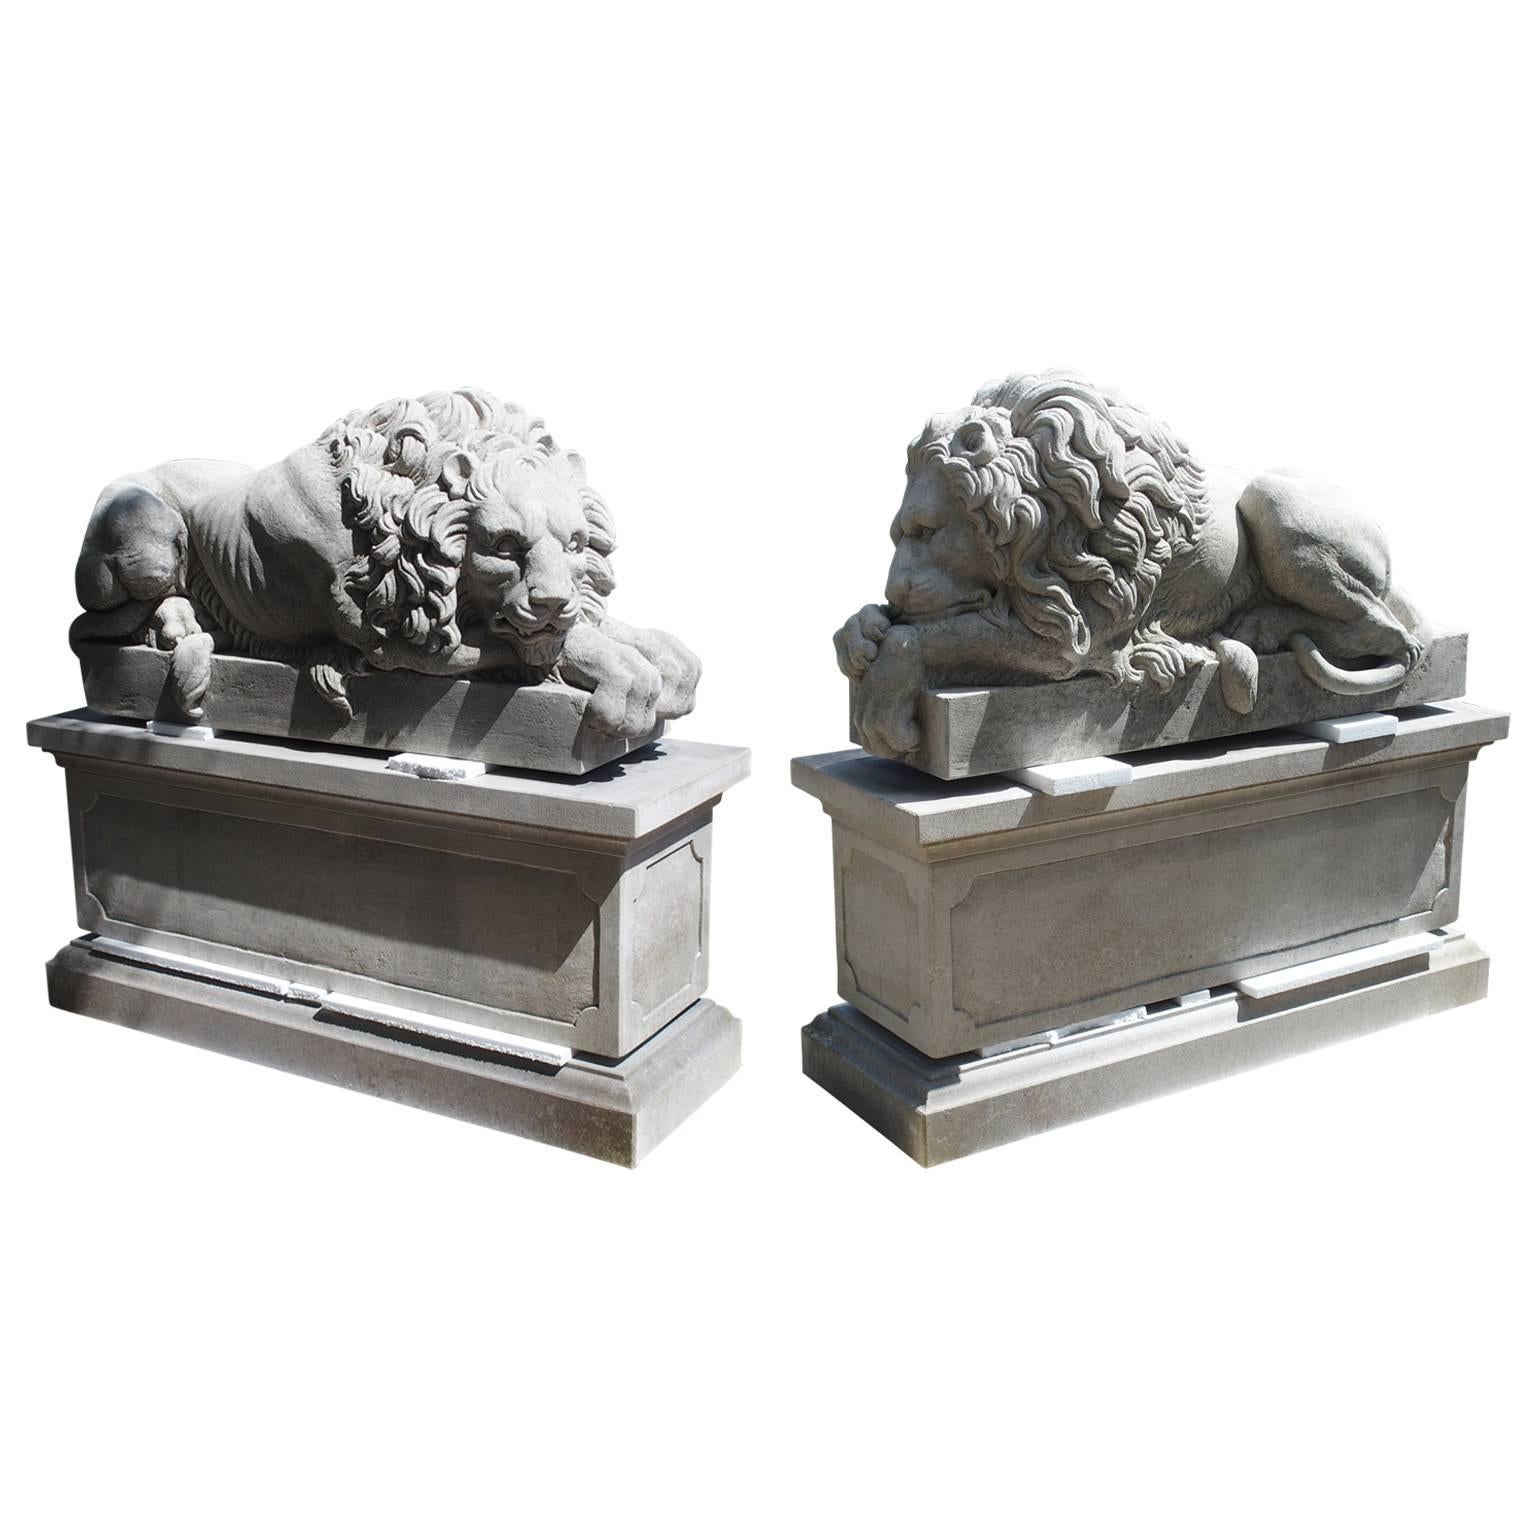 Paire de grands lions en pierre sculptée sur piédestal:: "Le dormeur et le vigilant"